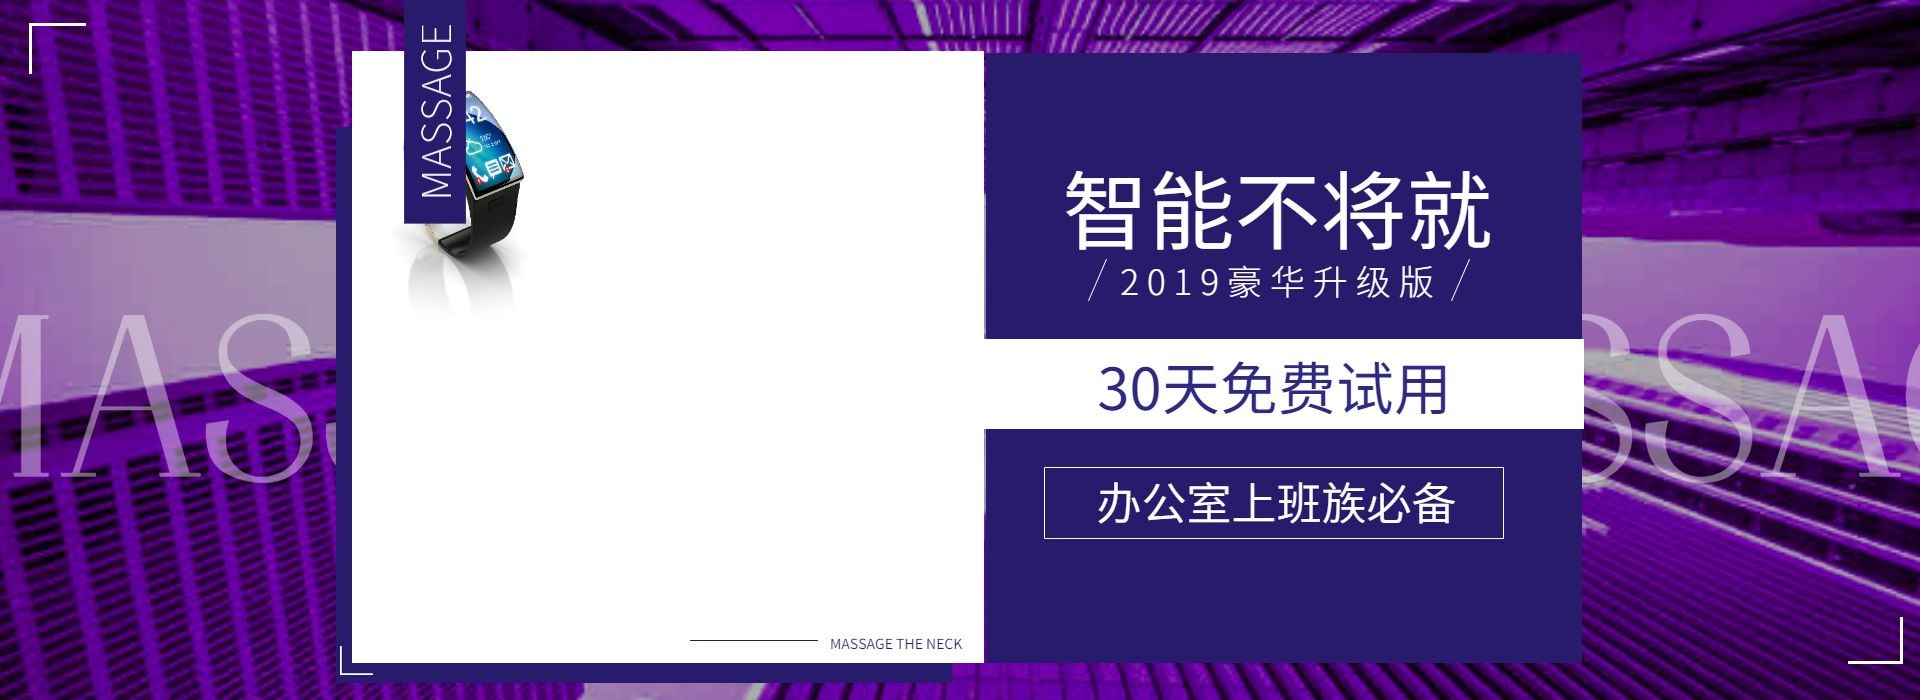 日常上新/百货/电子设备/紫色/酷炫/shopee/海淘/海报banner预览效果